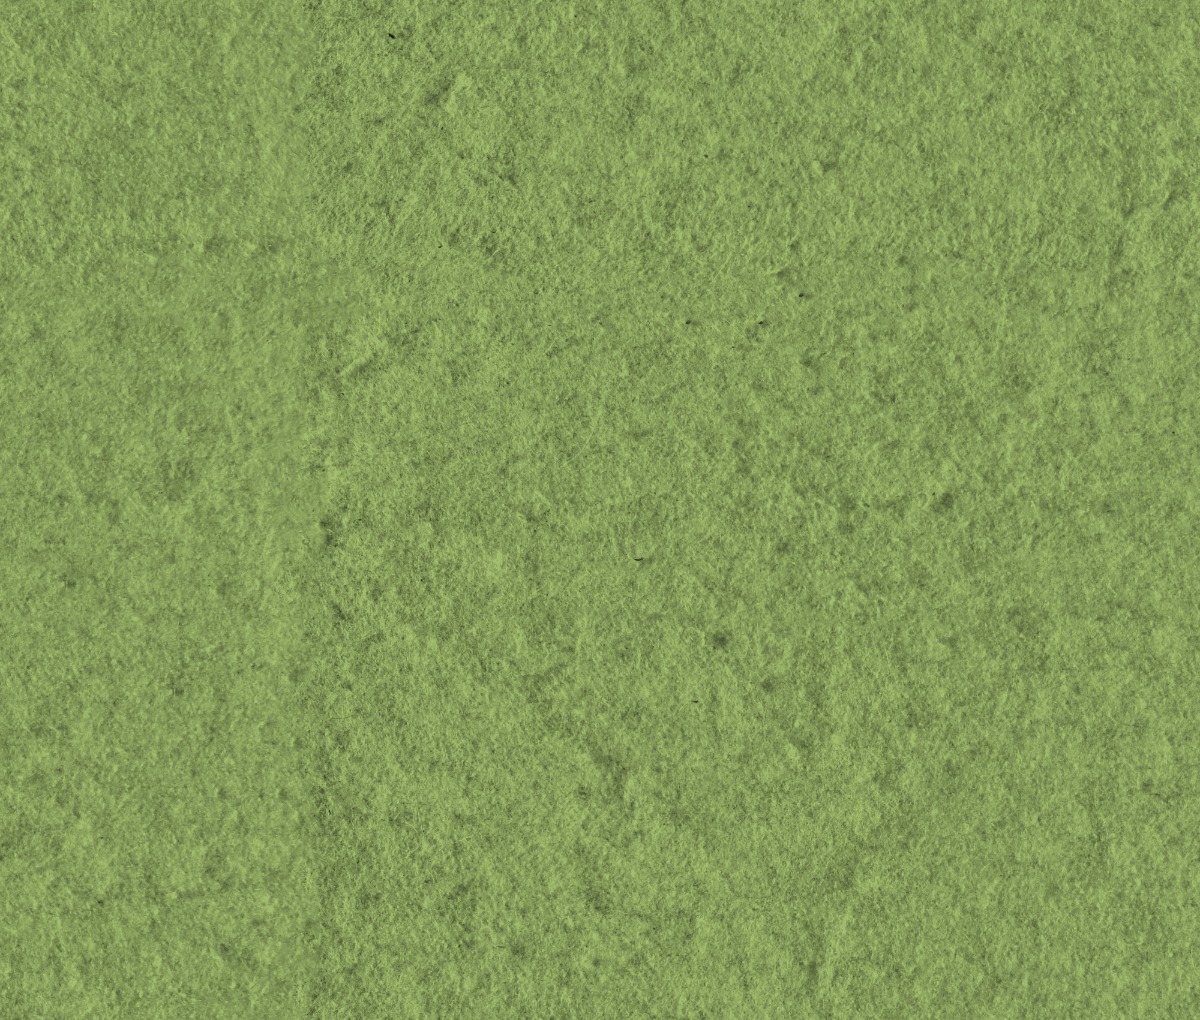 Vibrant Green Felt Surface Background, Wool Texture, Felt, Felt